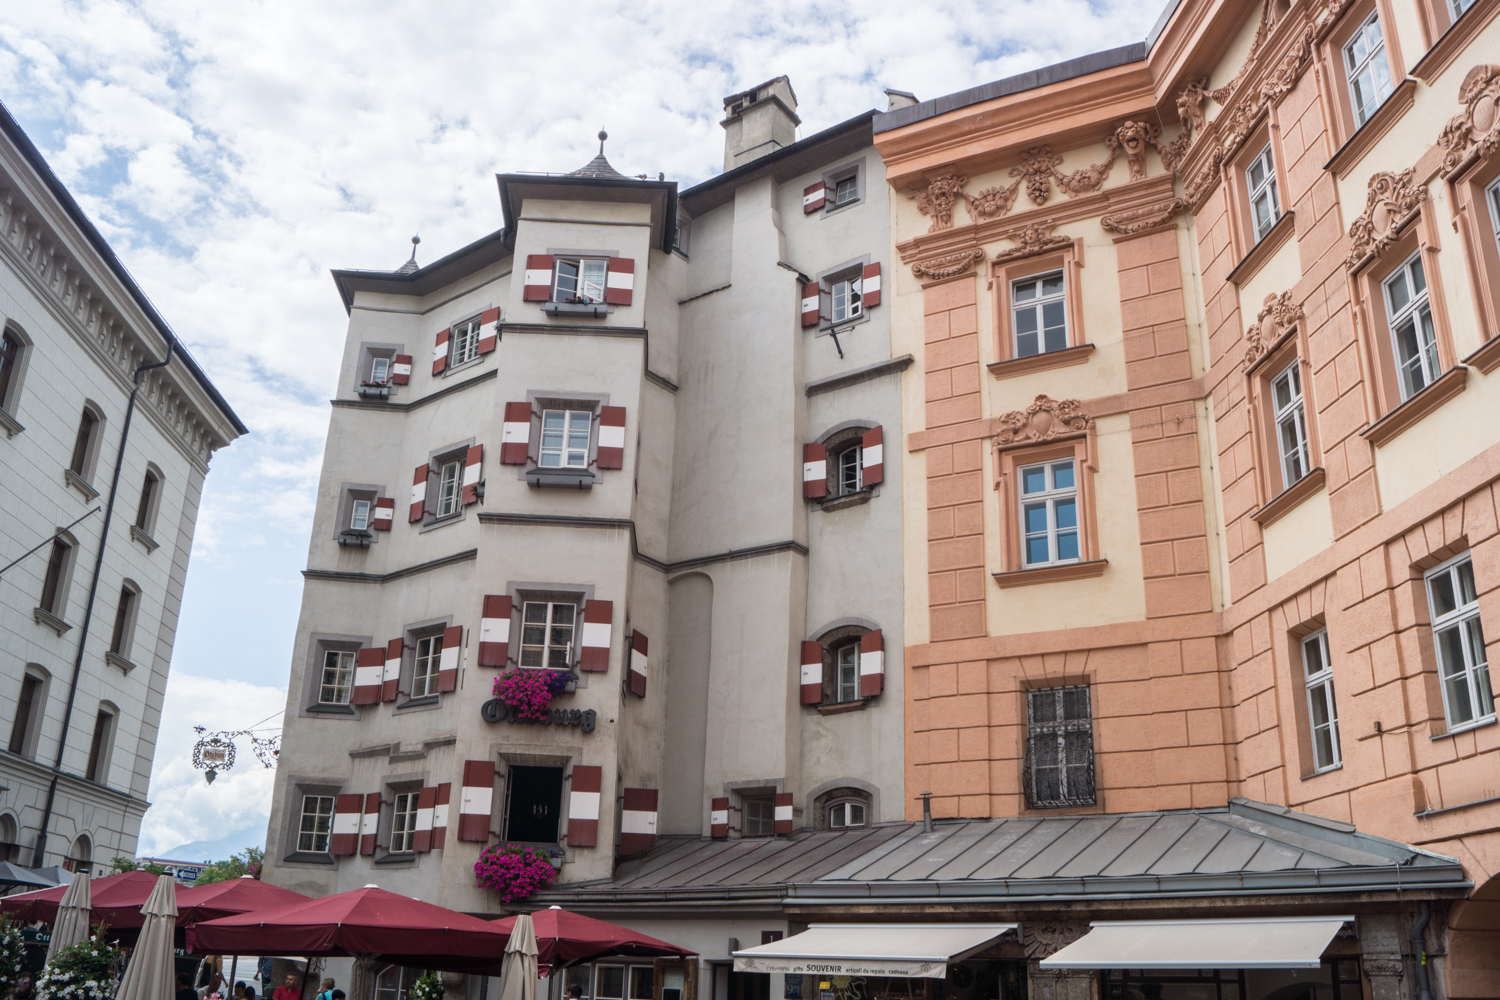 Innsbruck Sehenswürdigkeiten | Tipps und Empfehlungen für einen Urlaub in Tirol